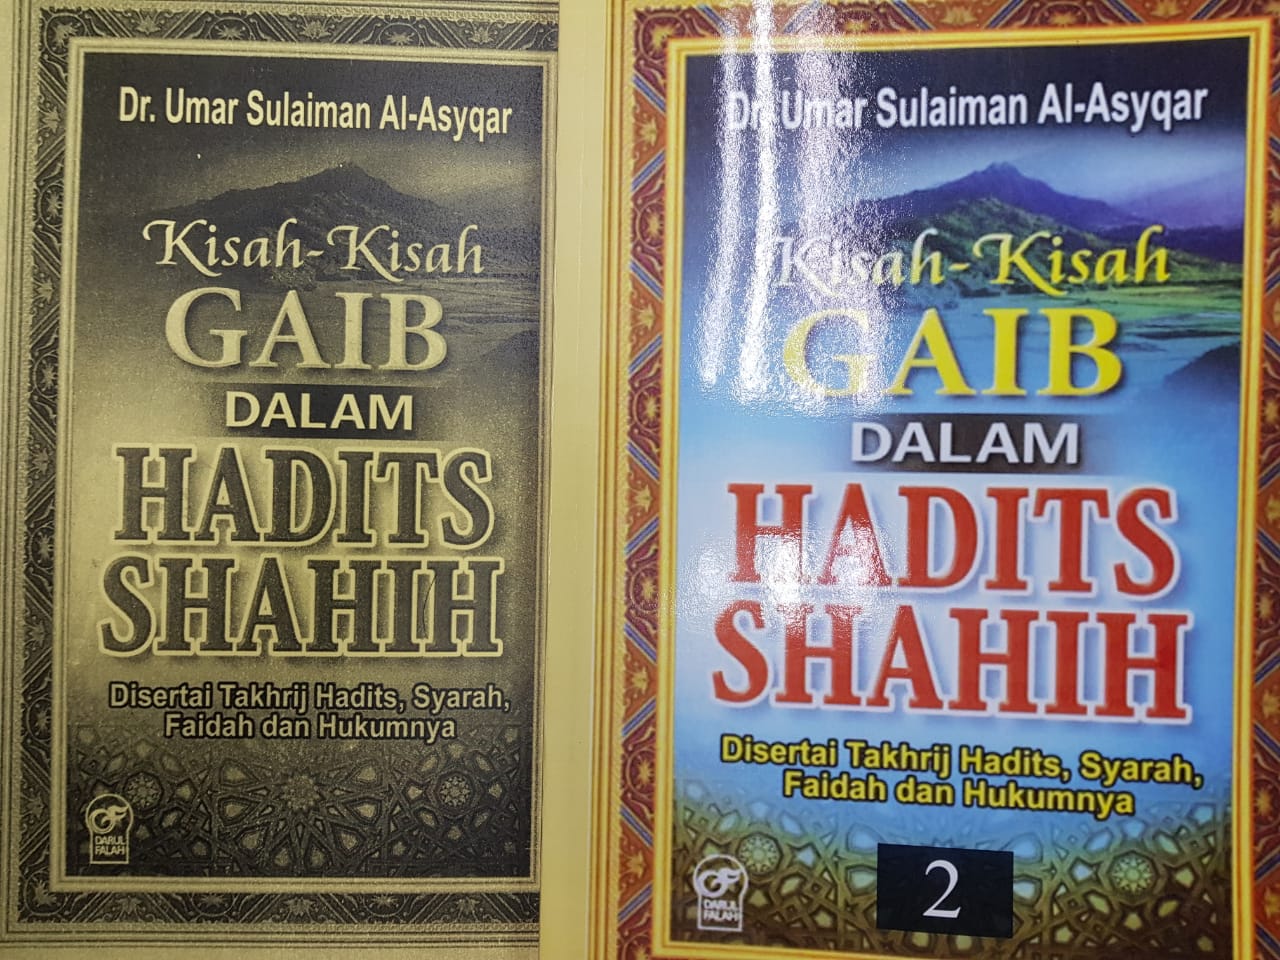 Combo Hadis Kisah-kisah Gaib Jild 1 & 2 - RM55.00